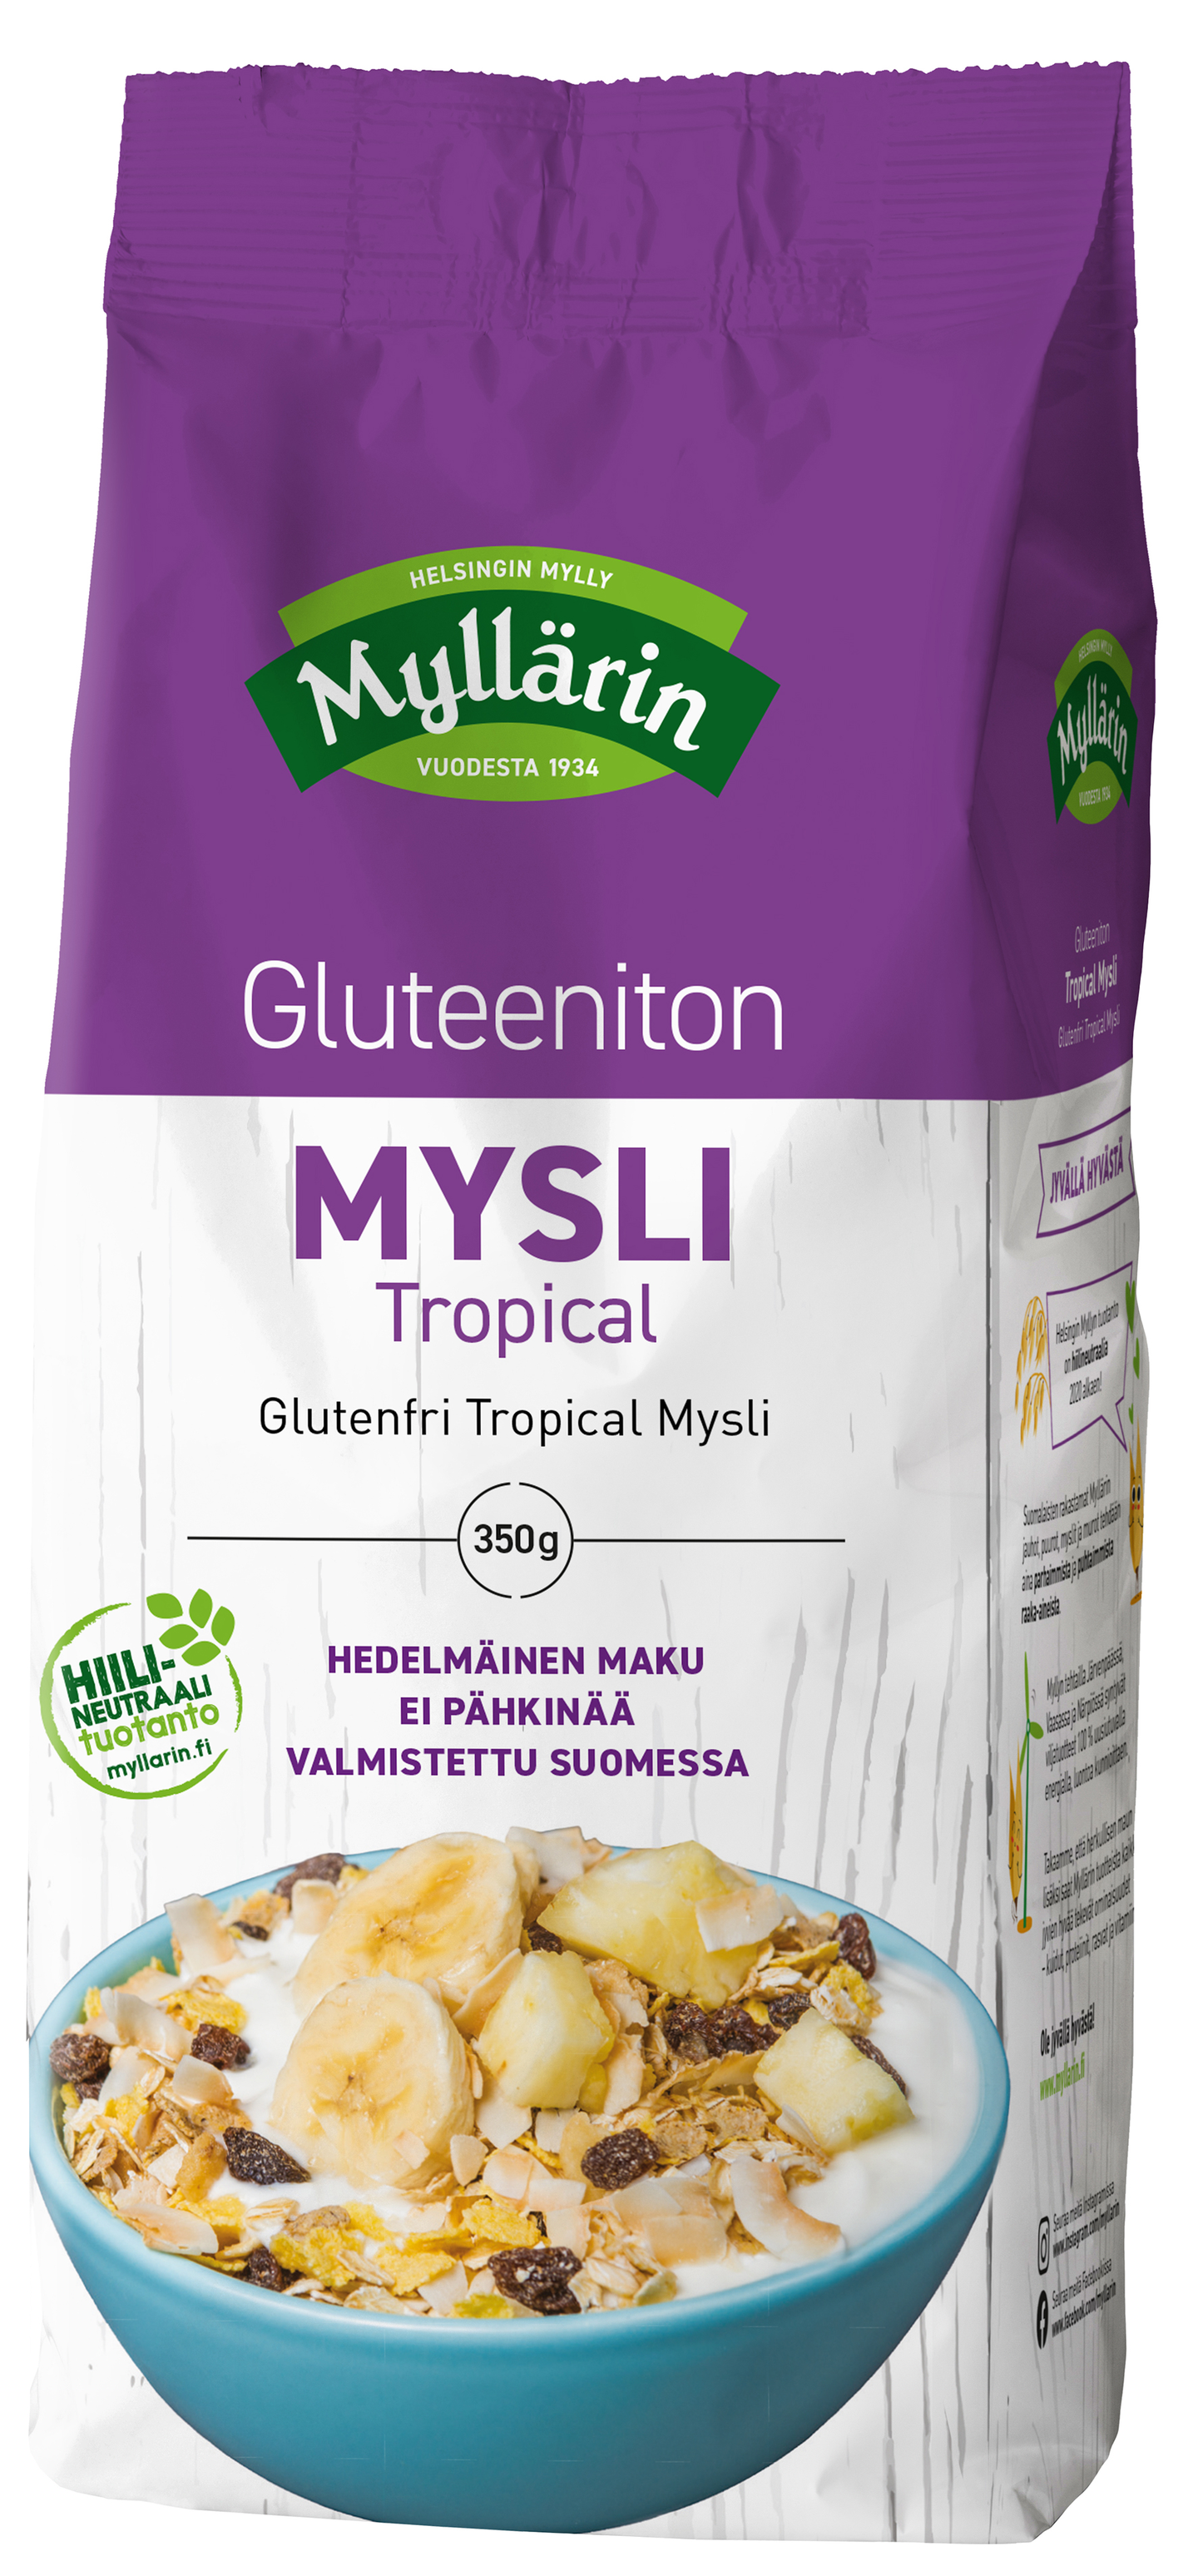 Myllärin Tropical mysli 350g gluteeniton